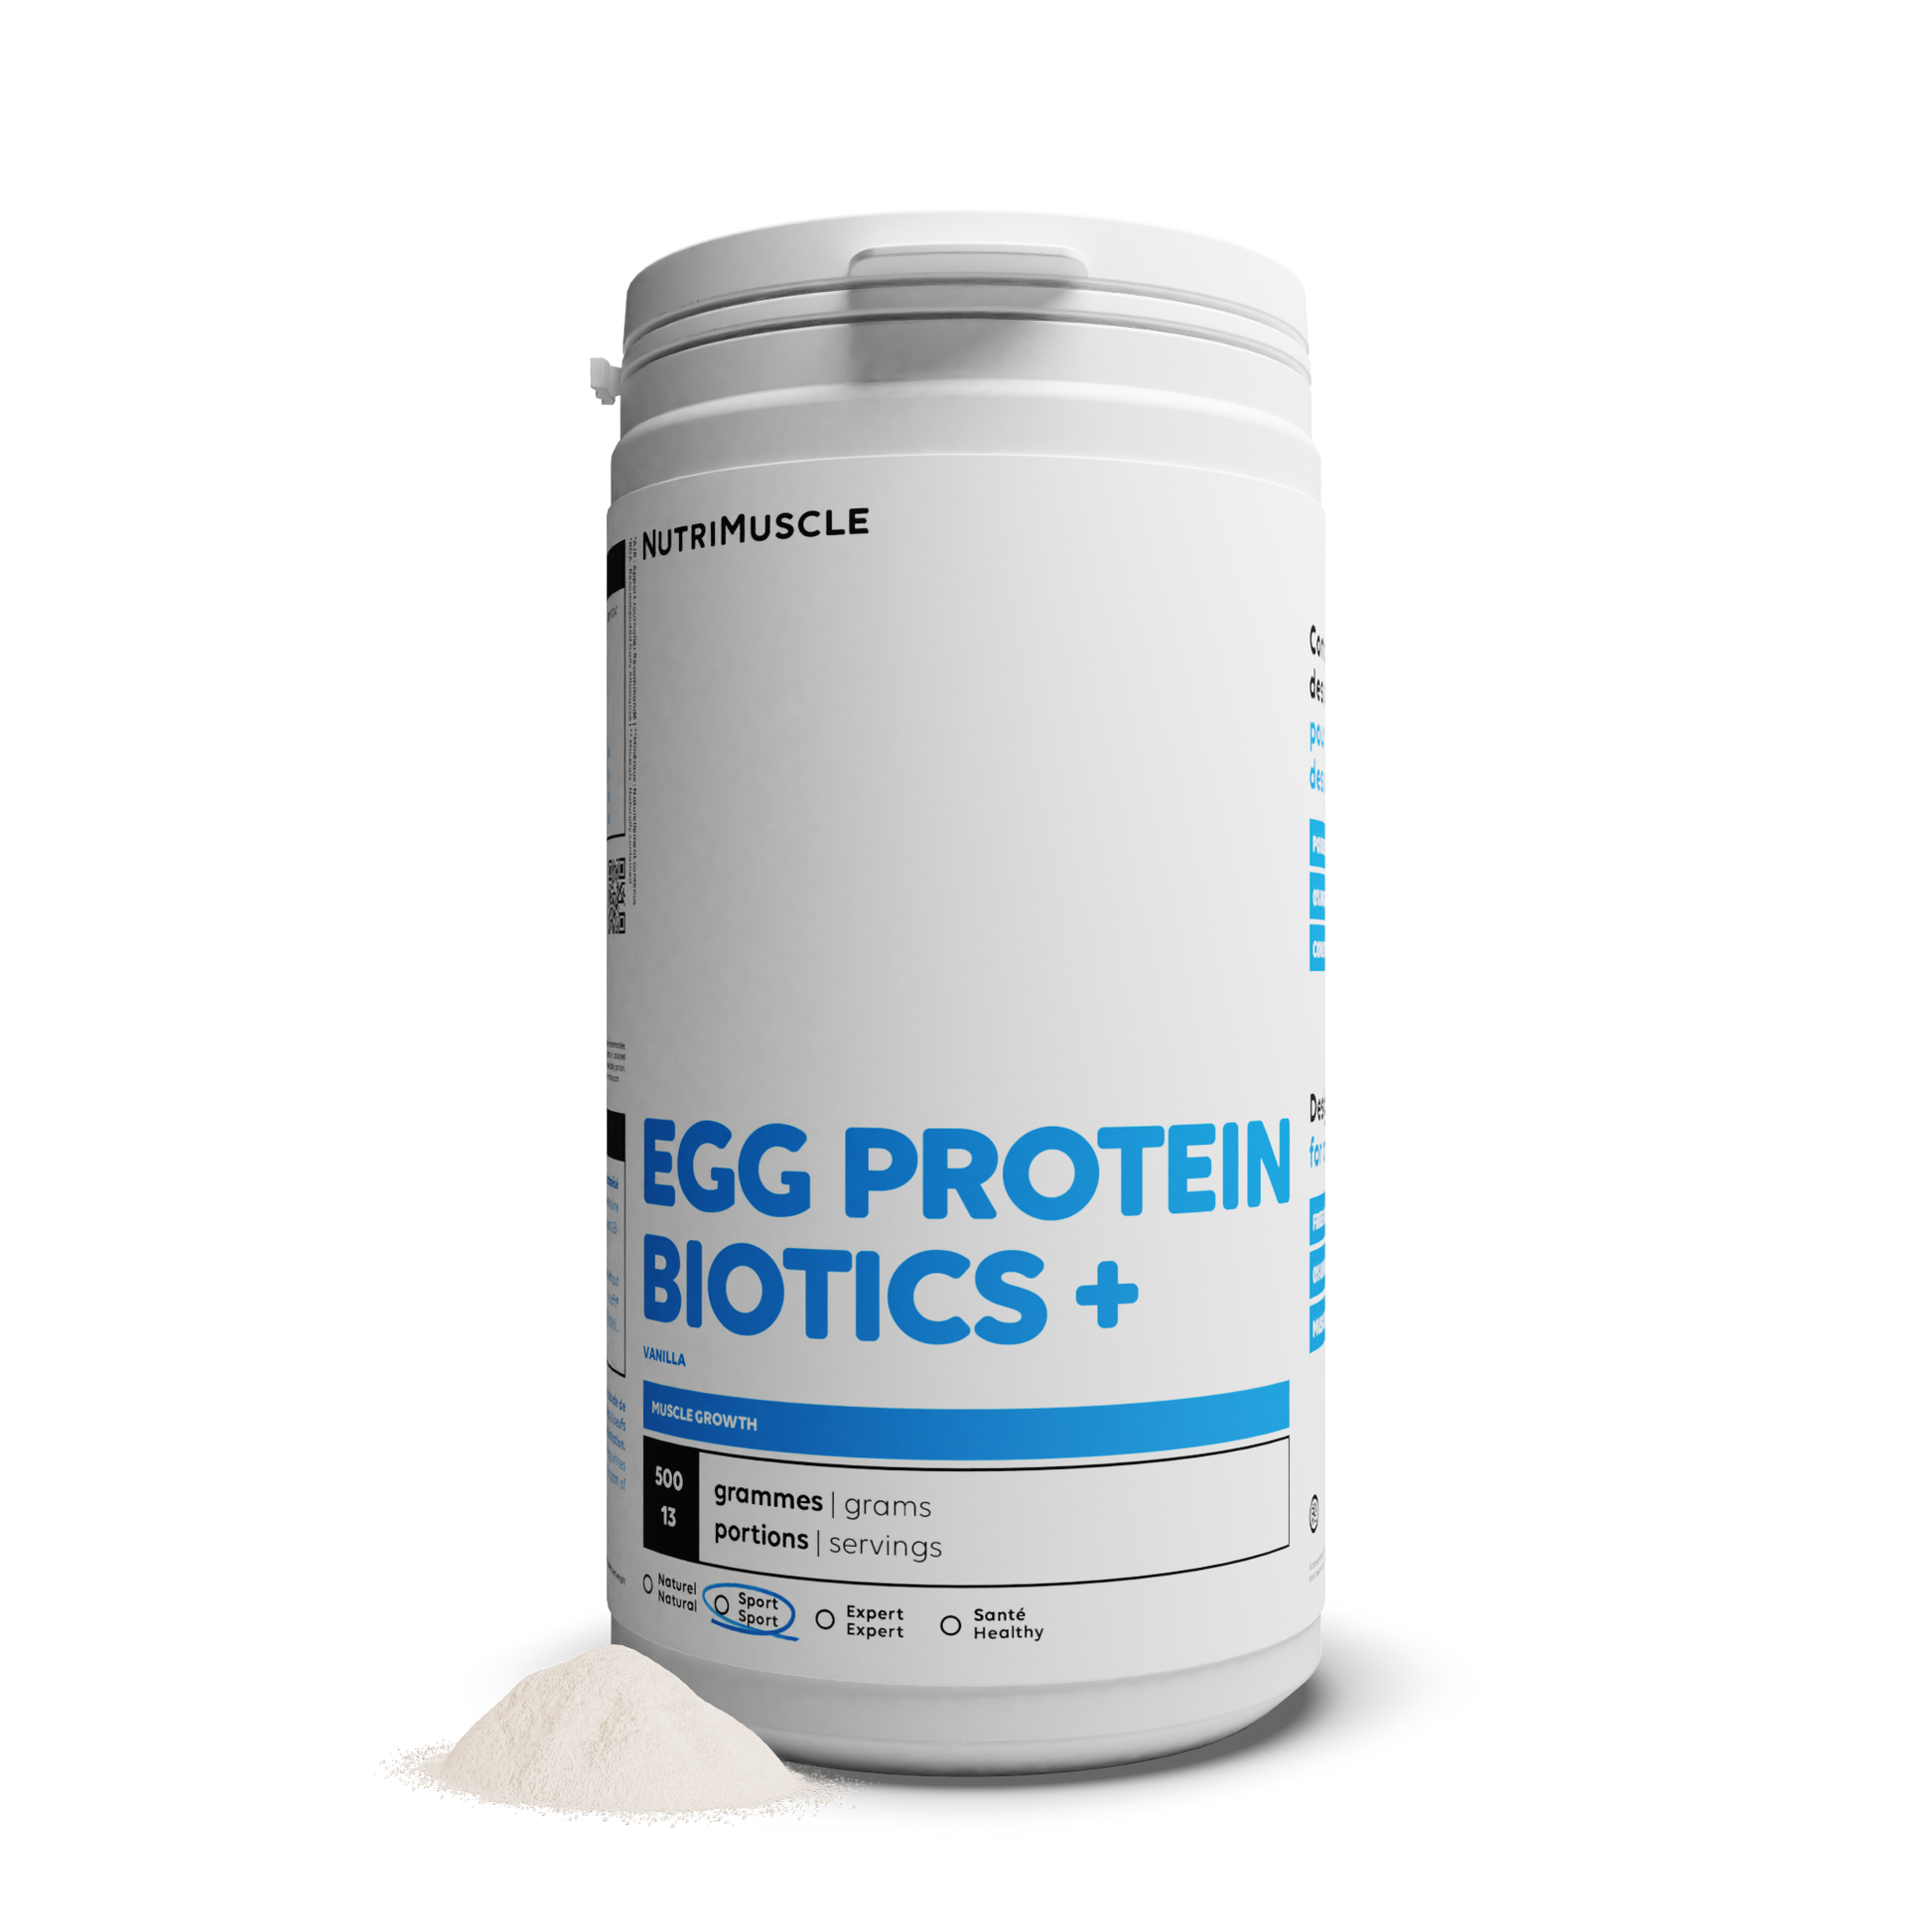 Proteine ??dell'uovo in polvere